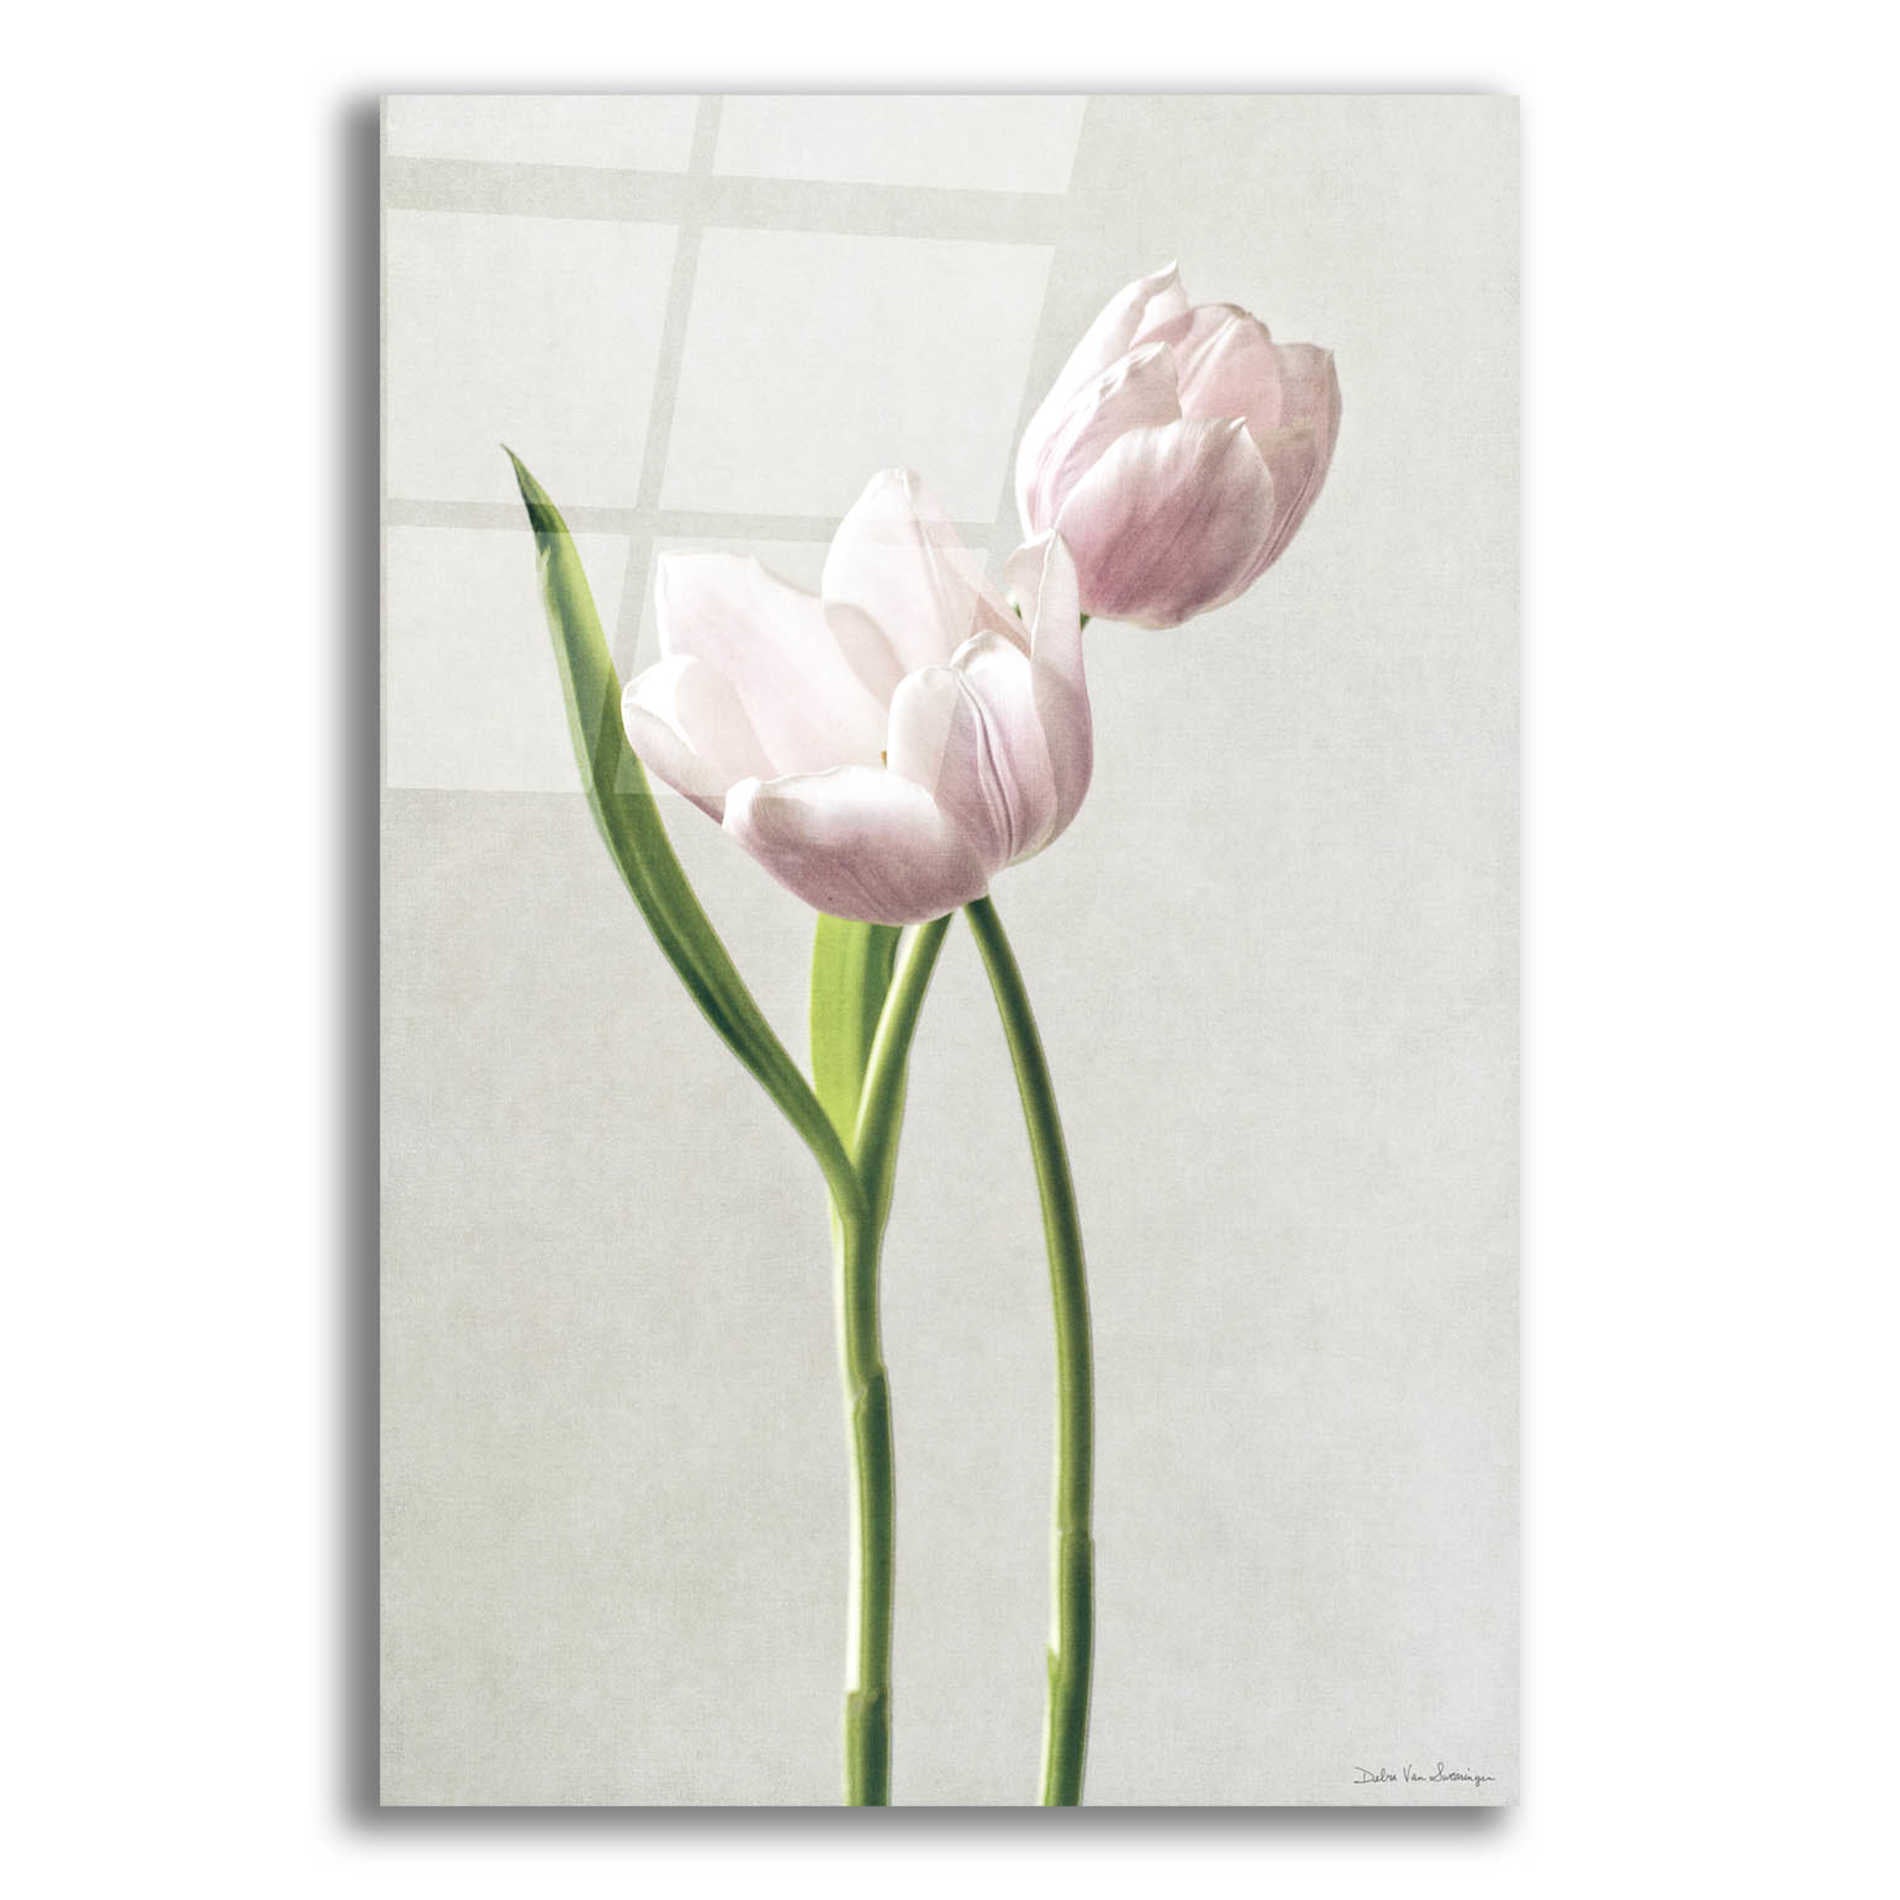 Epic Art 'Light Tulips III' by Debra Van Swearingen, Acrylic Glass Wall Art,12x16x1.1x0,20x24x1.1x0,26x30x1.74x0,40x54x1.74x0